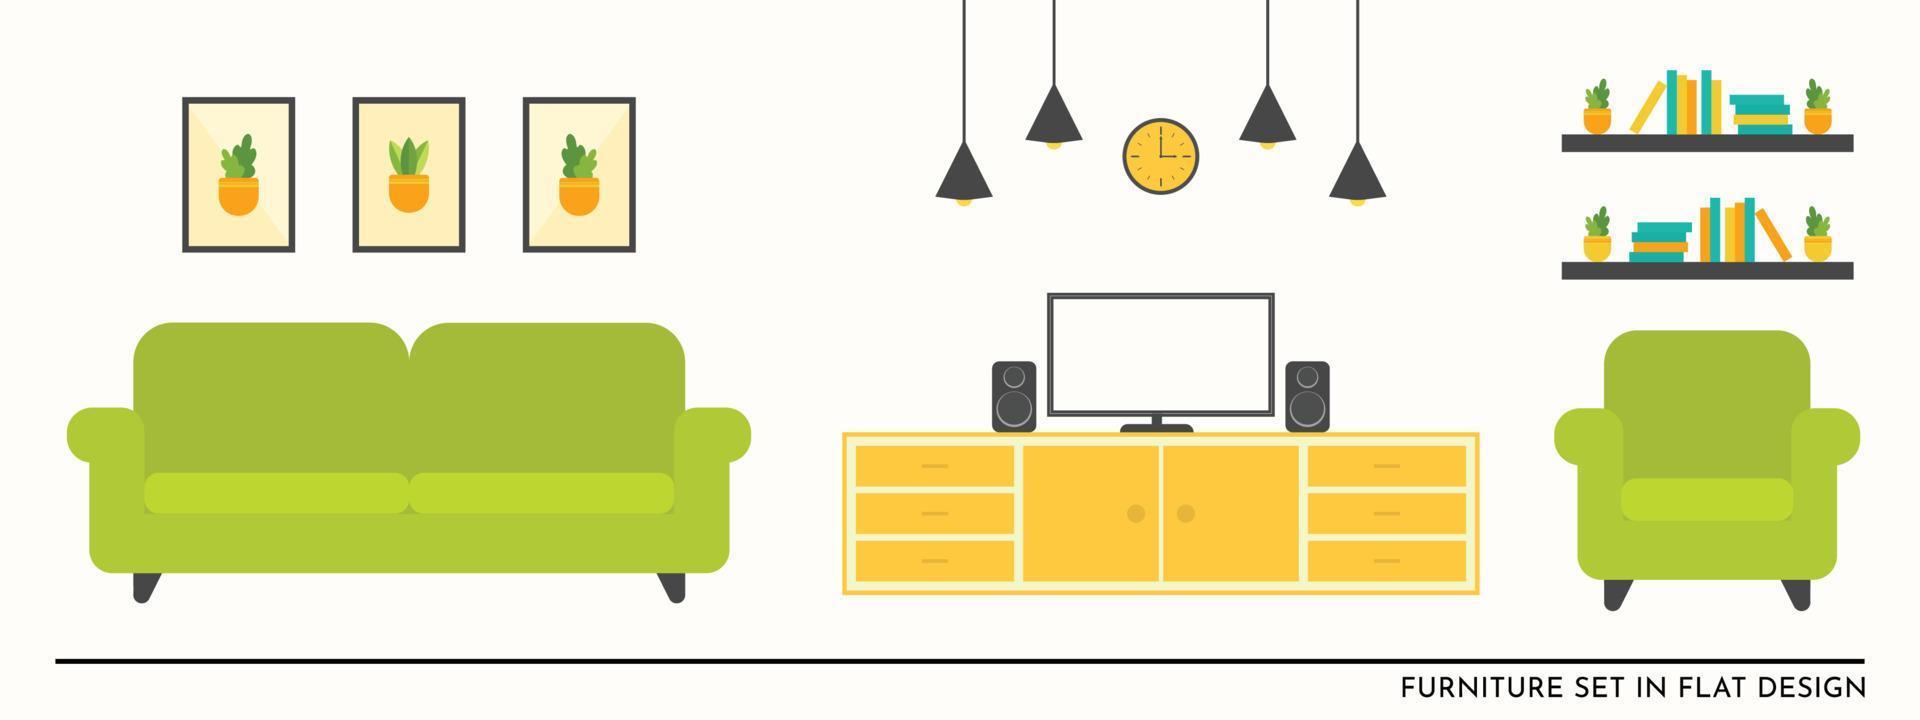 vettore di set di mobili piatti per il design dell'illustrazione del soggiorno in divano verde e tavolo giallo